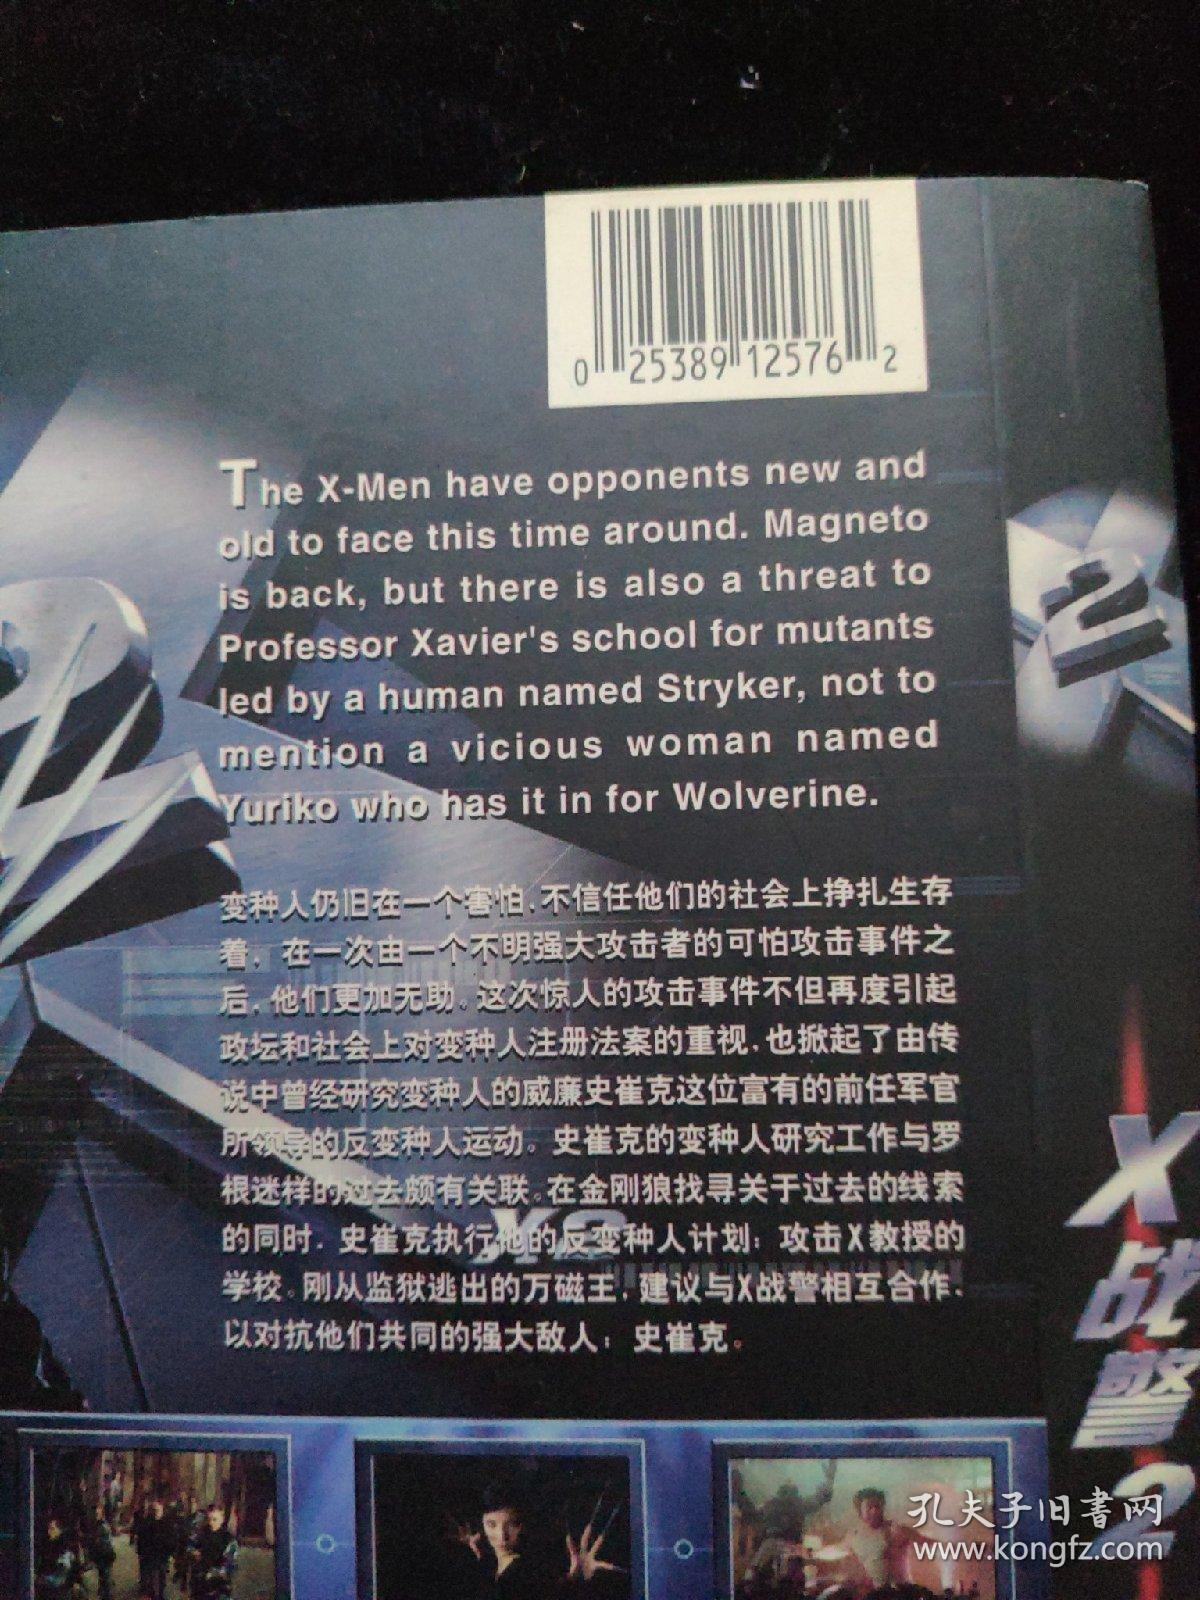 光盘DVD：X战警2   简装1碟